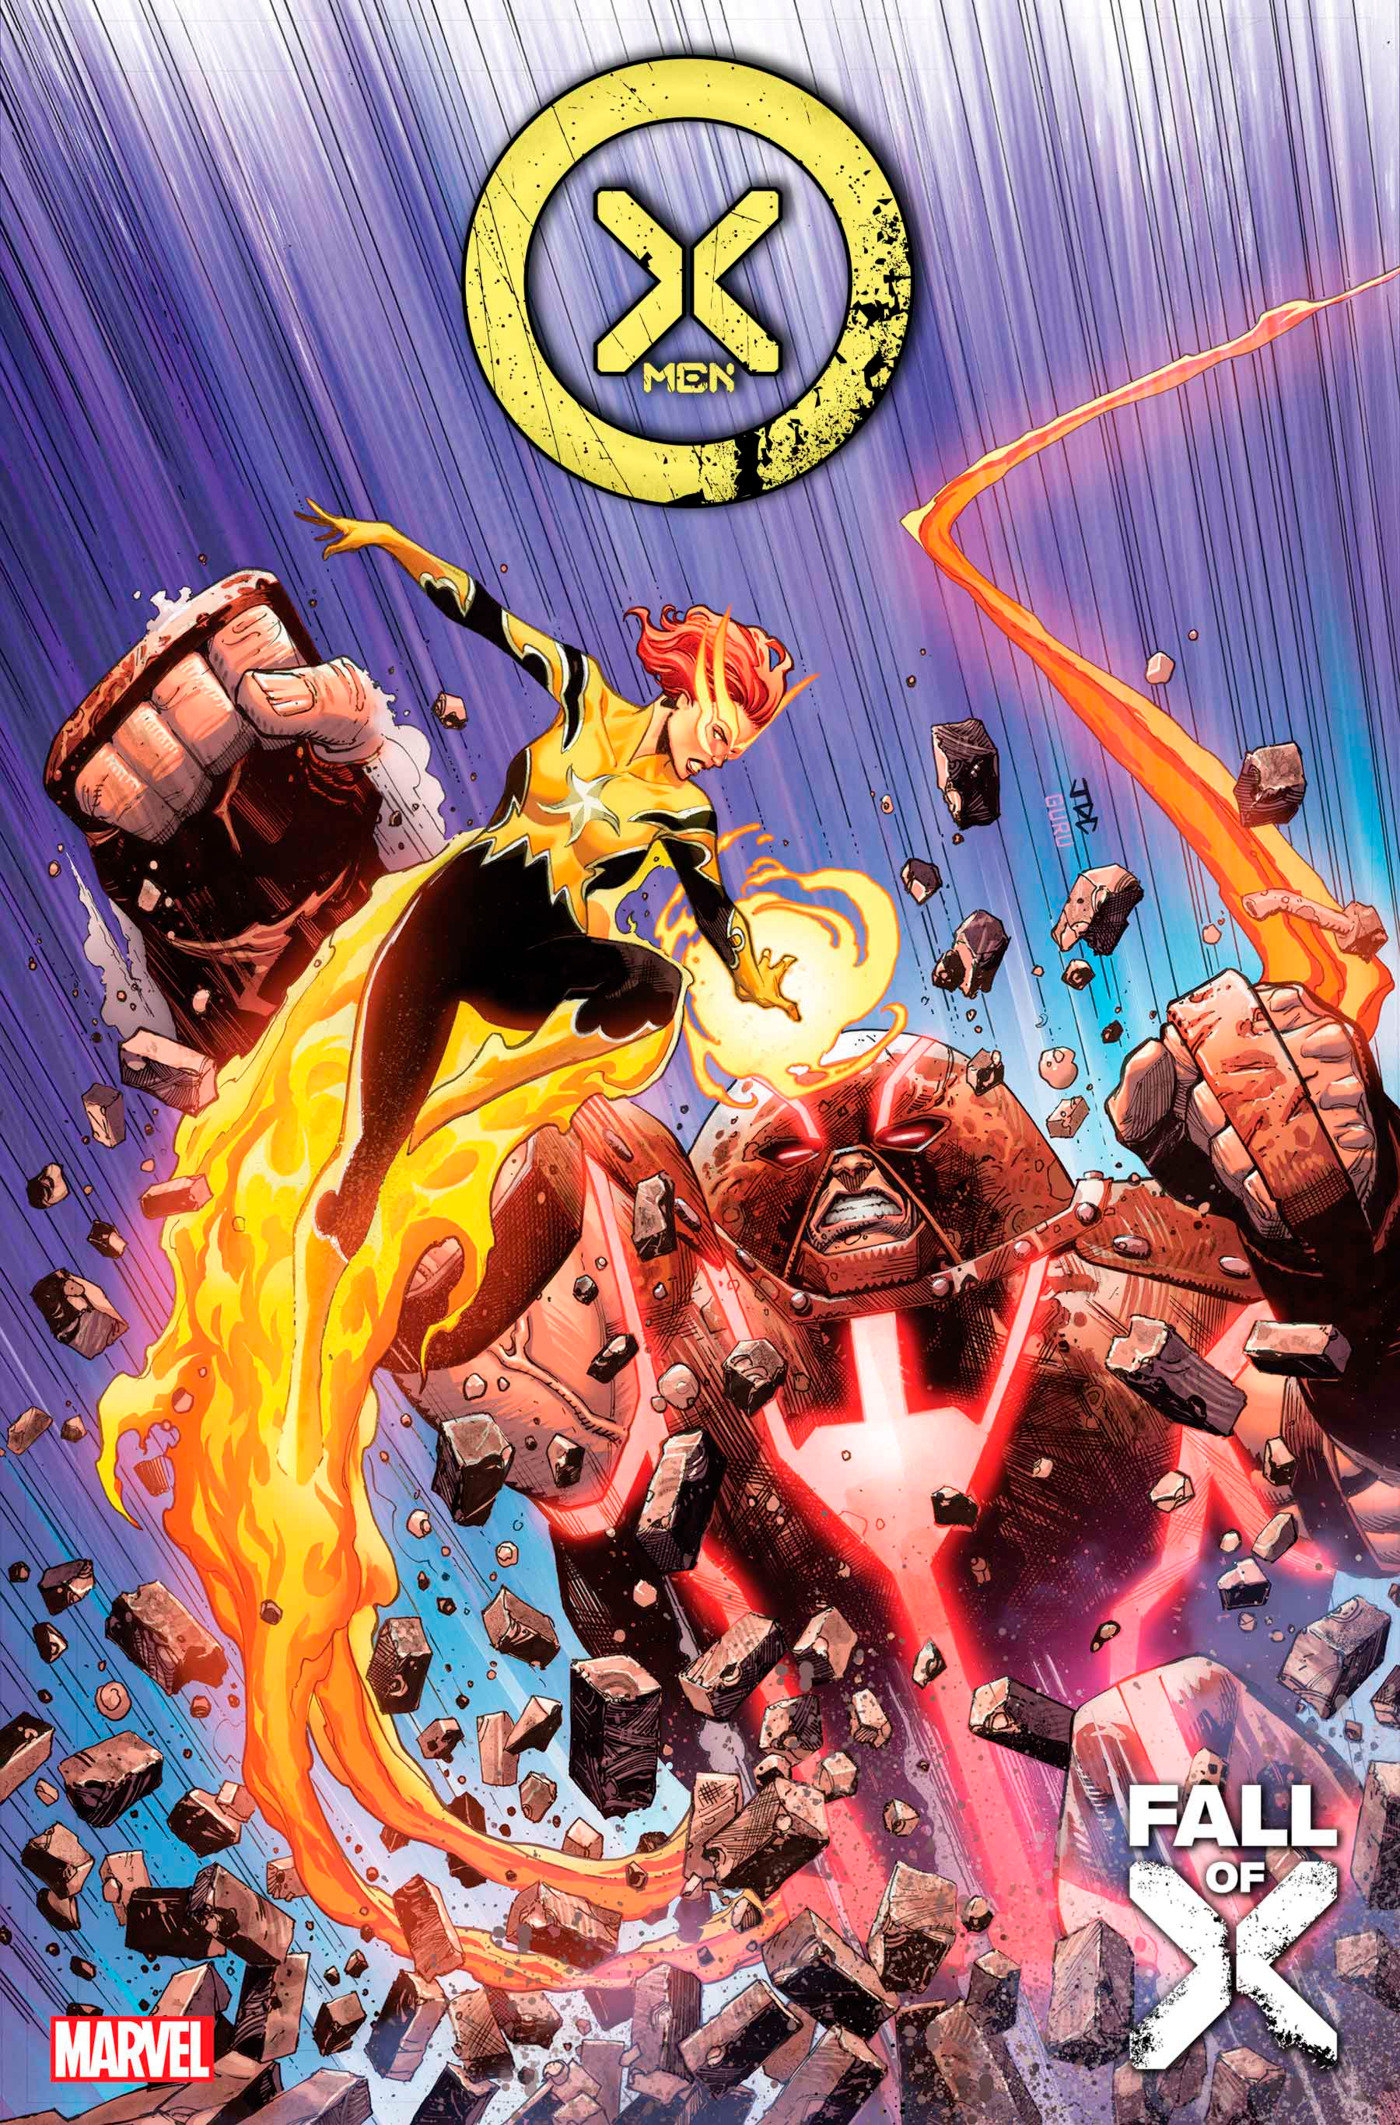 X-Men #28 (Fall of the X-Men) (2021)